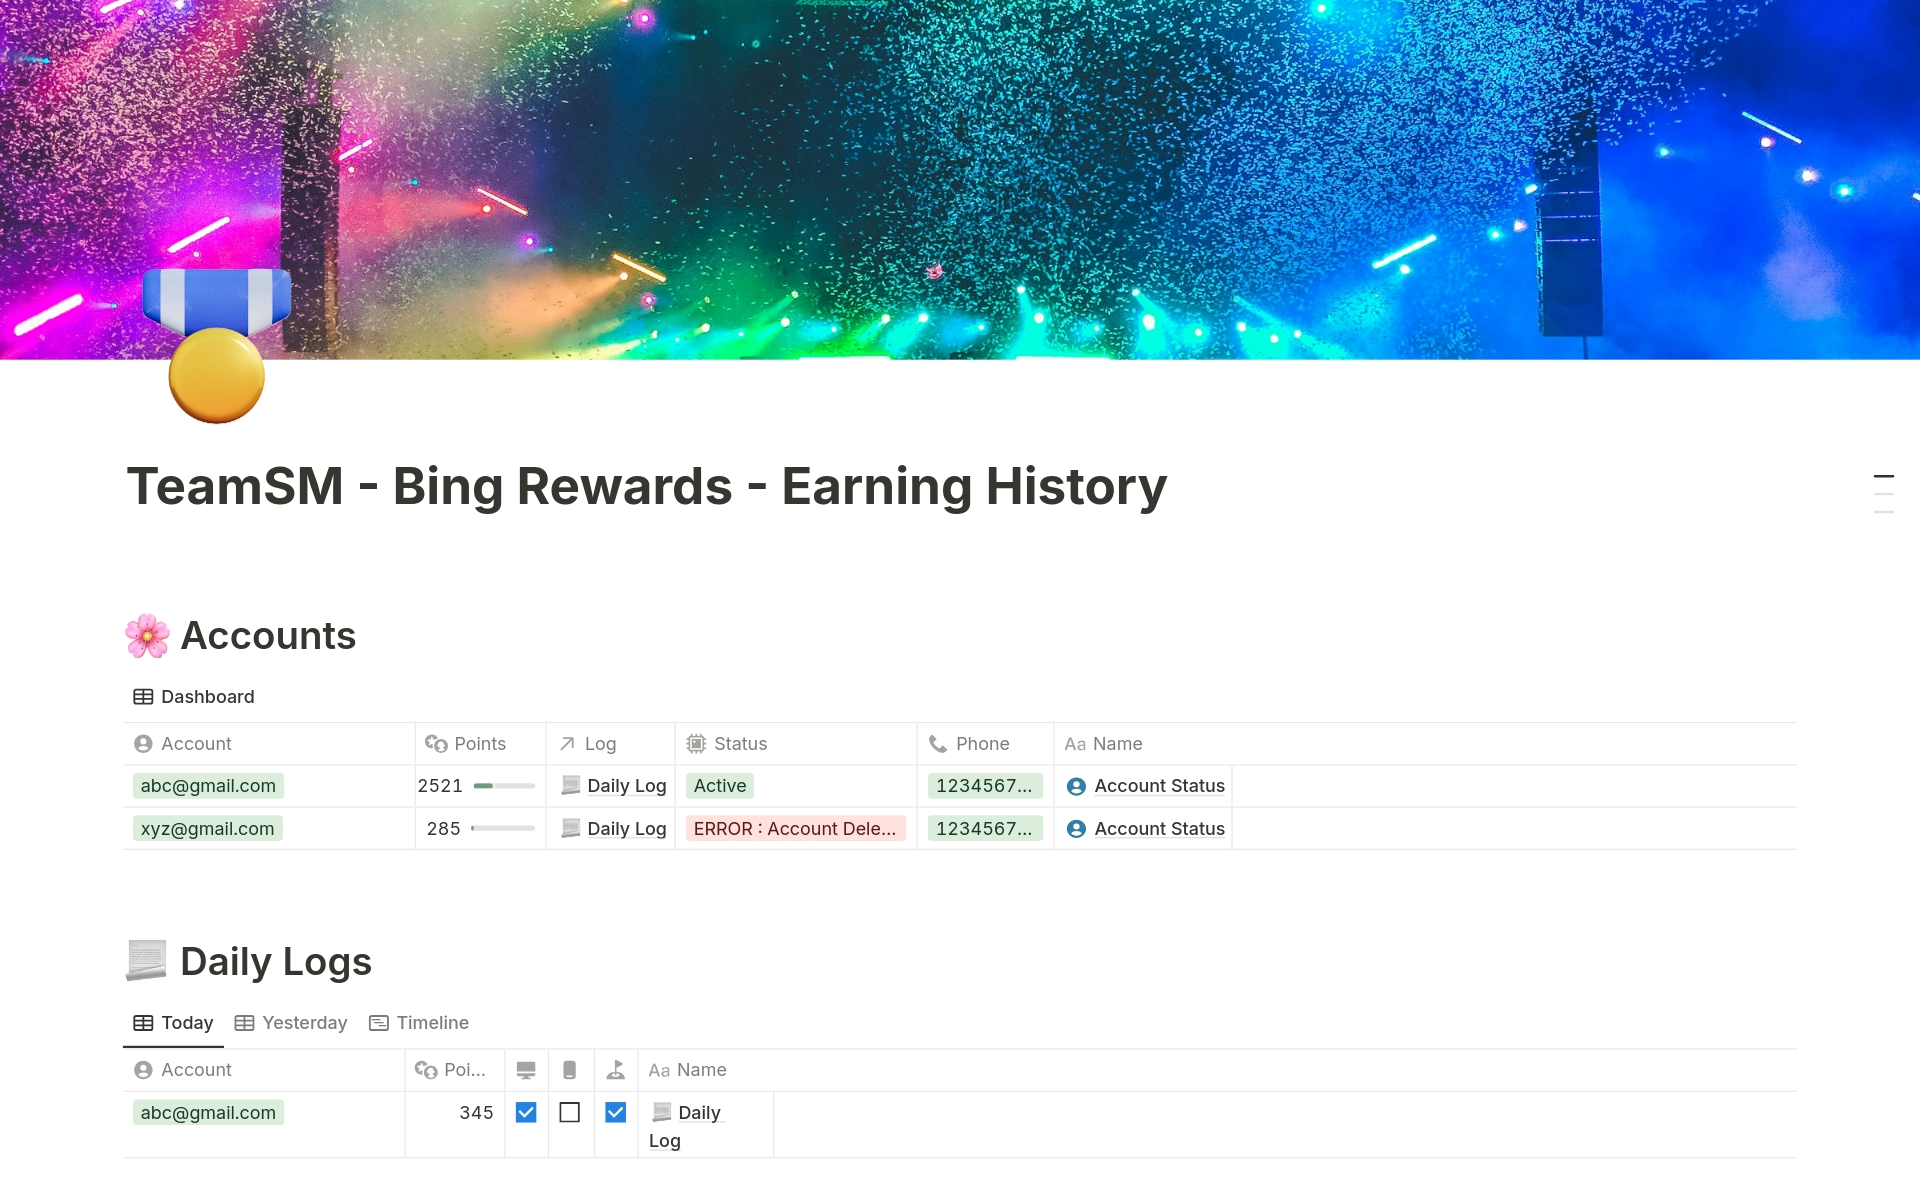 Uma prévia do modelo para TeamSM - Bing Rewards - Earning History